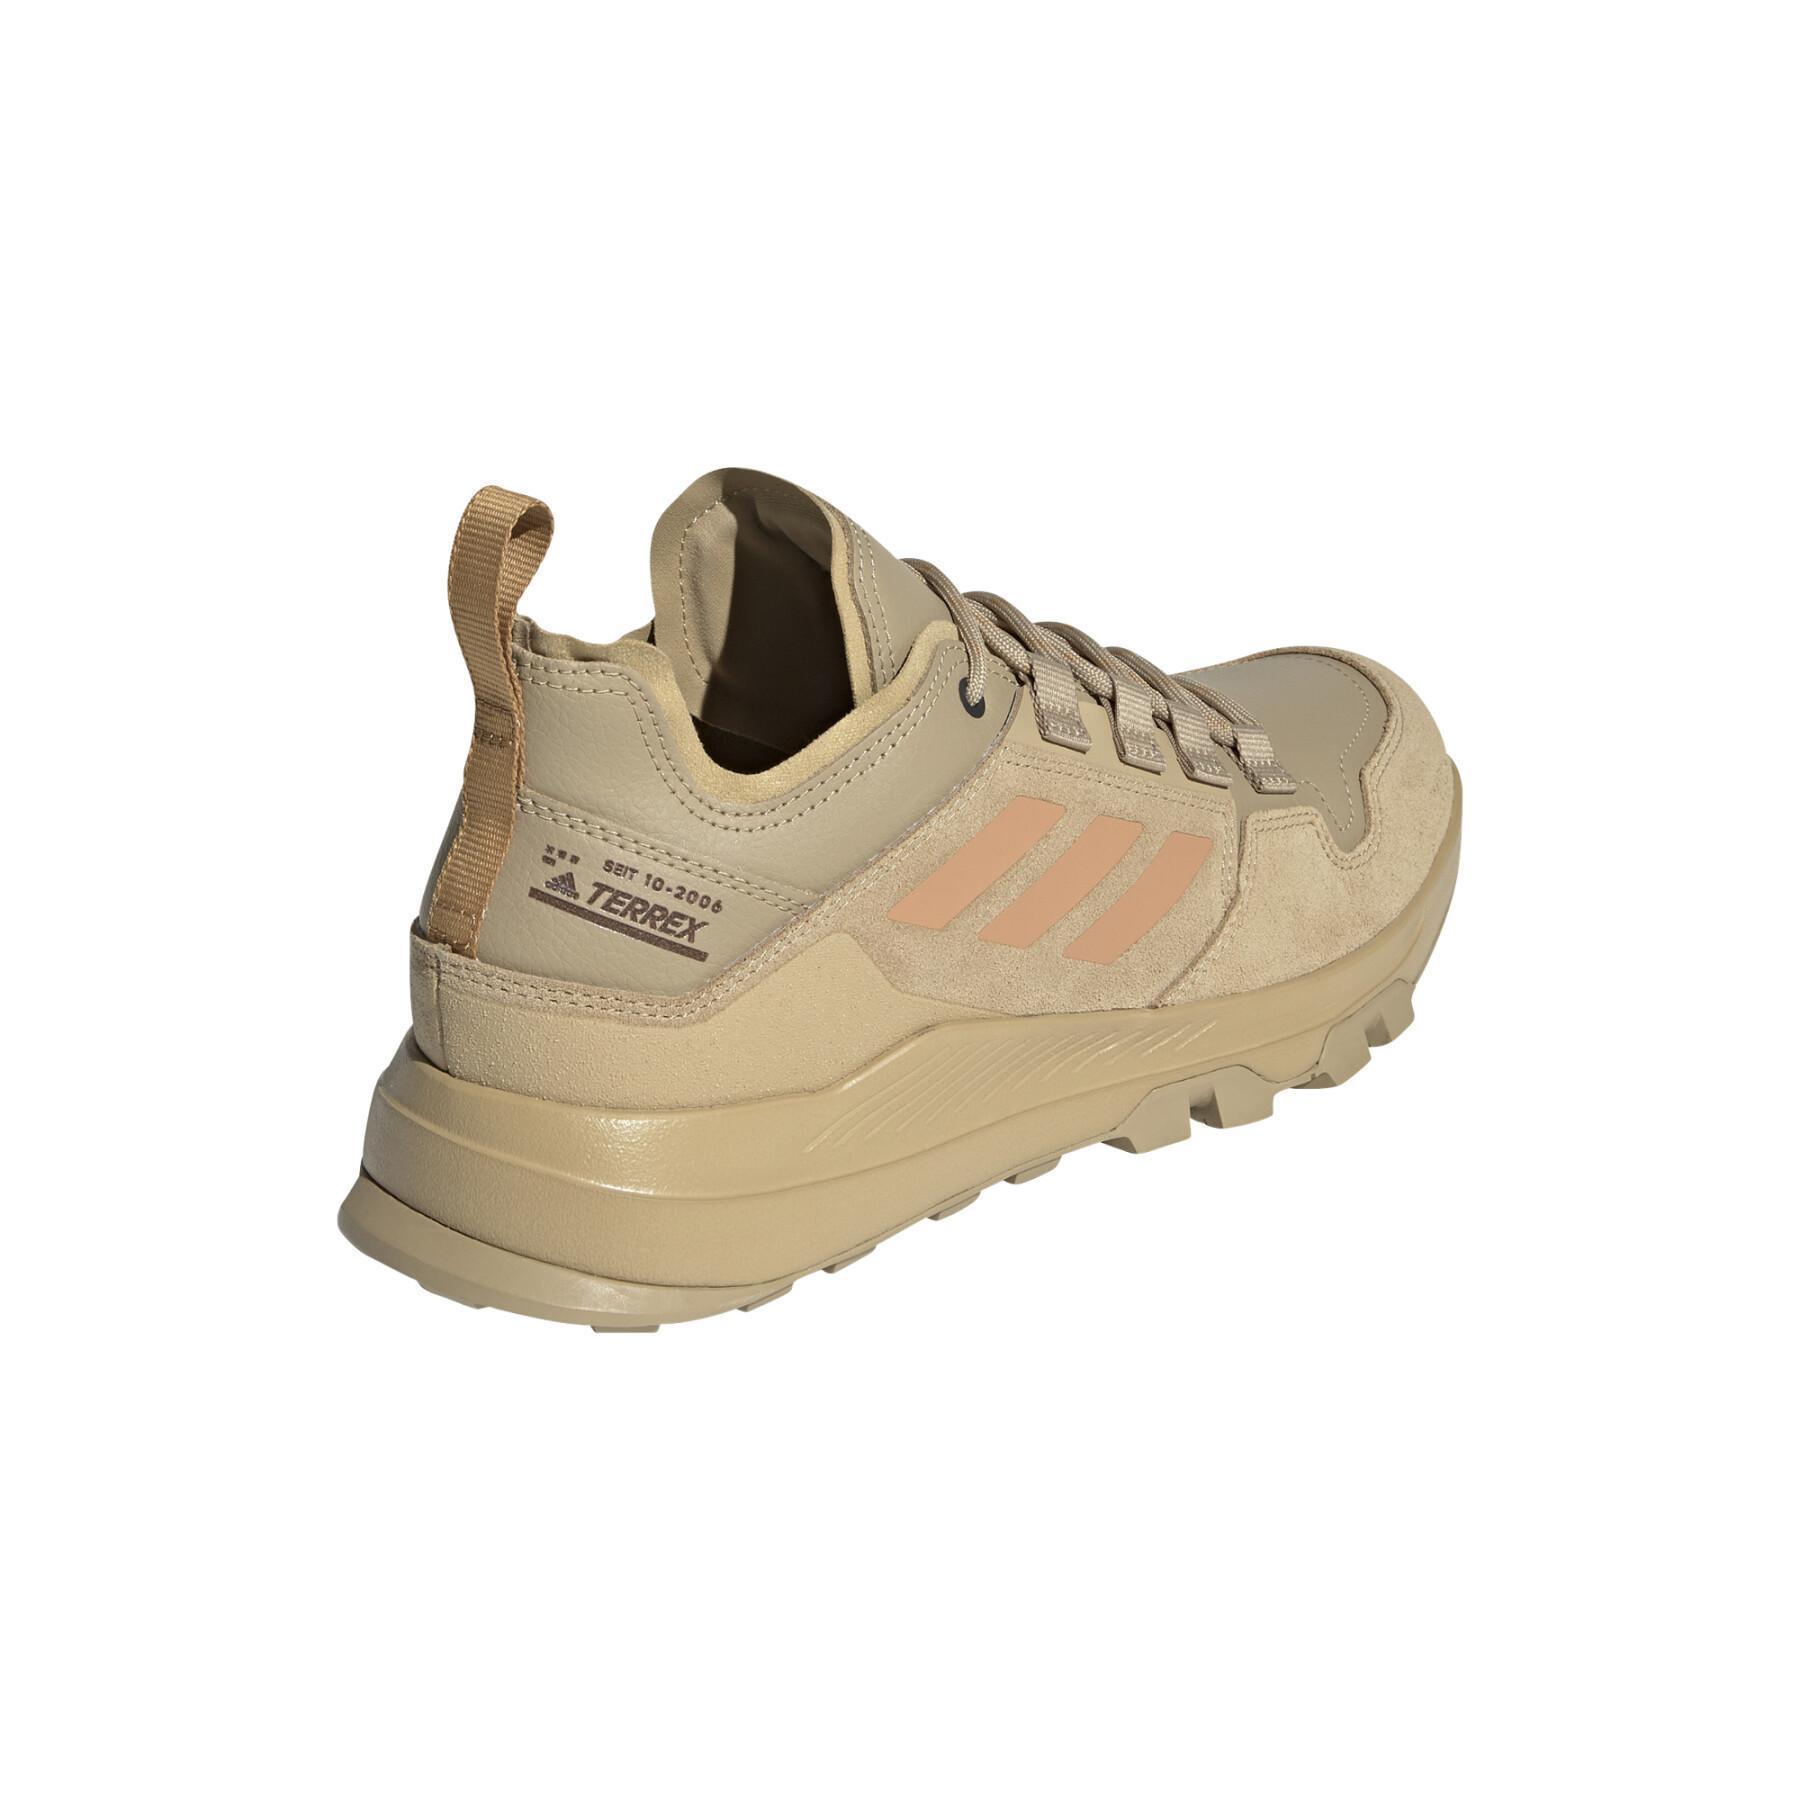 Chaussures de randonnée adidas Terrex Urban Low Leather